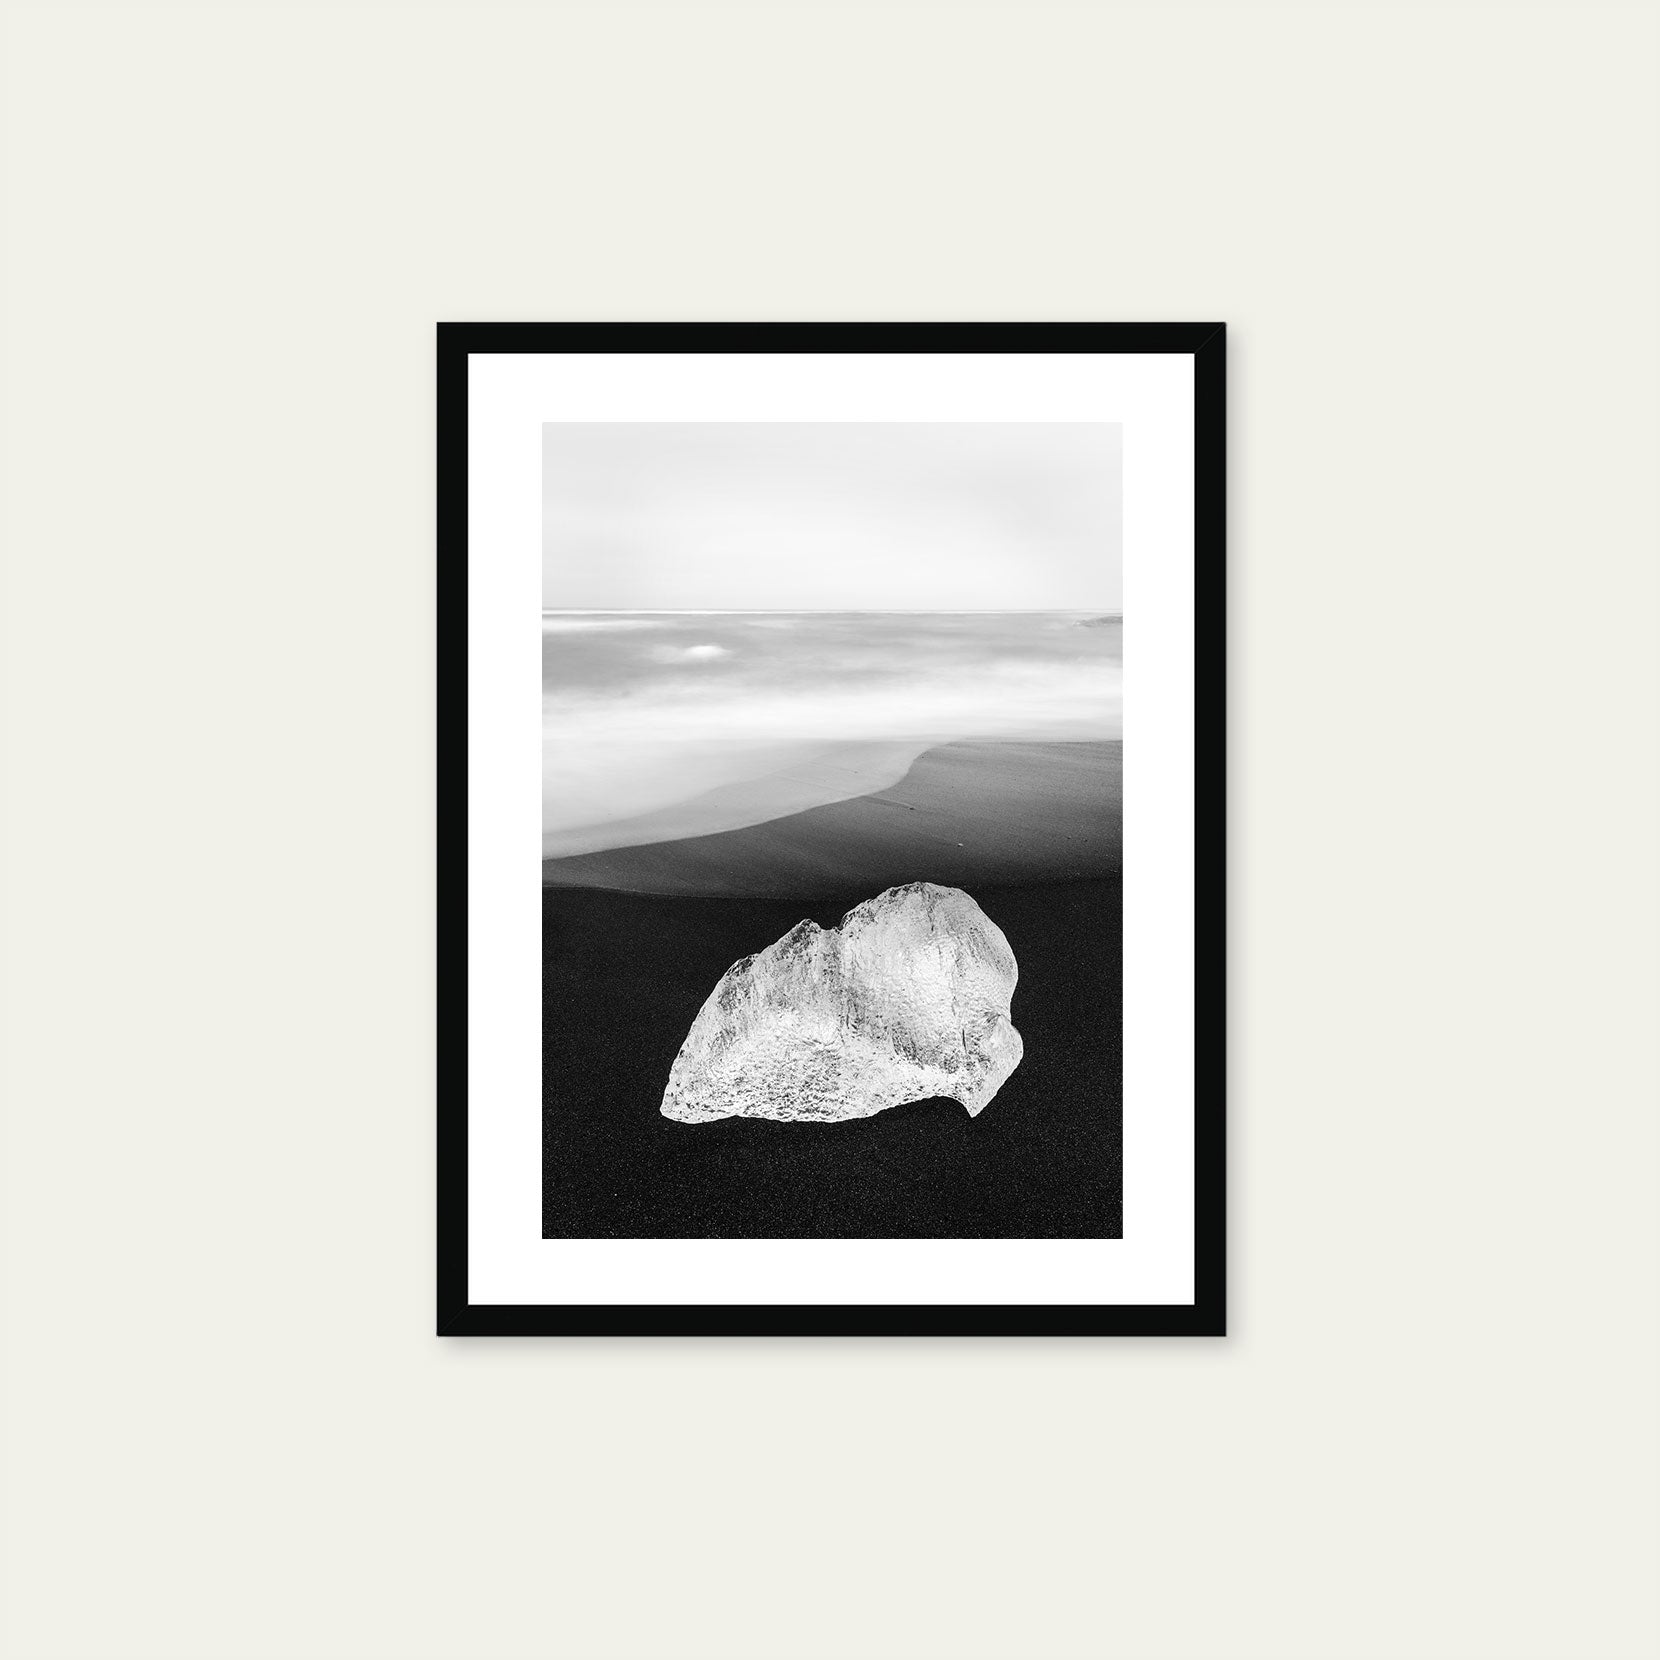 A black framed print of a ice on black sand beach